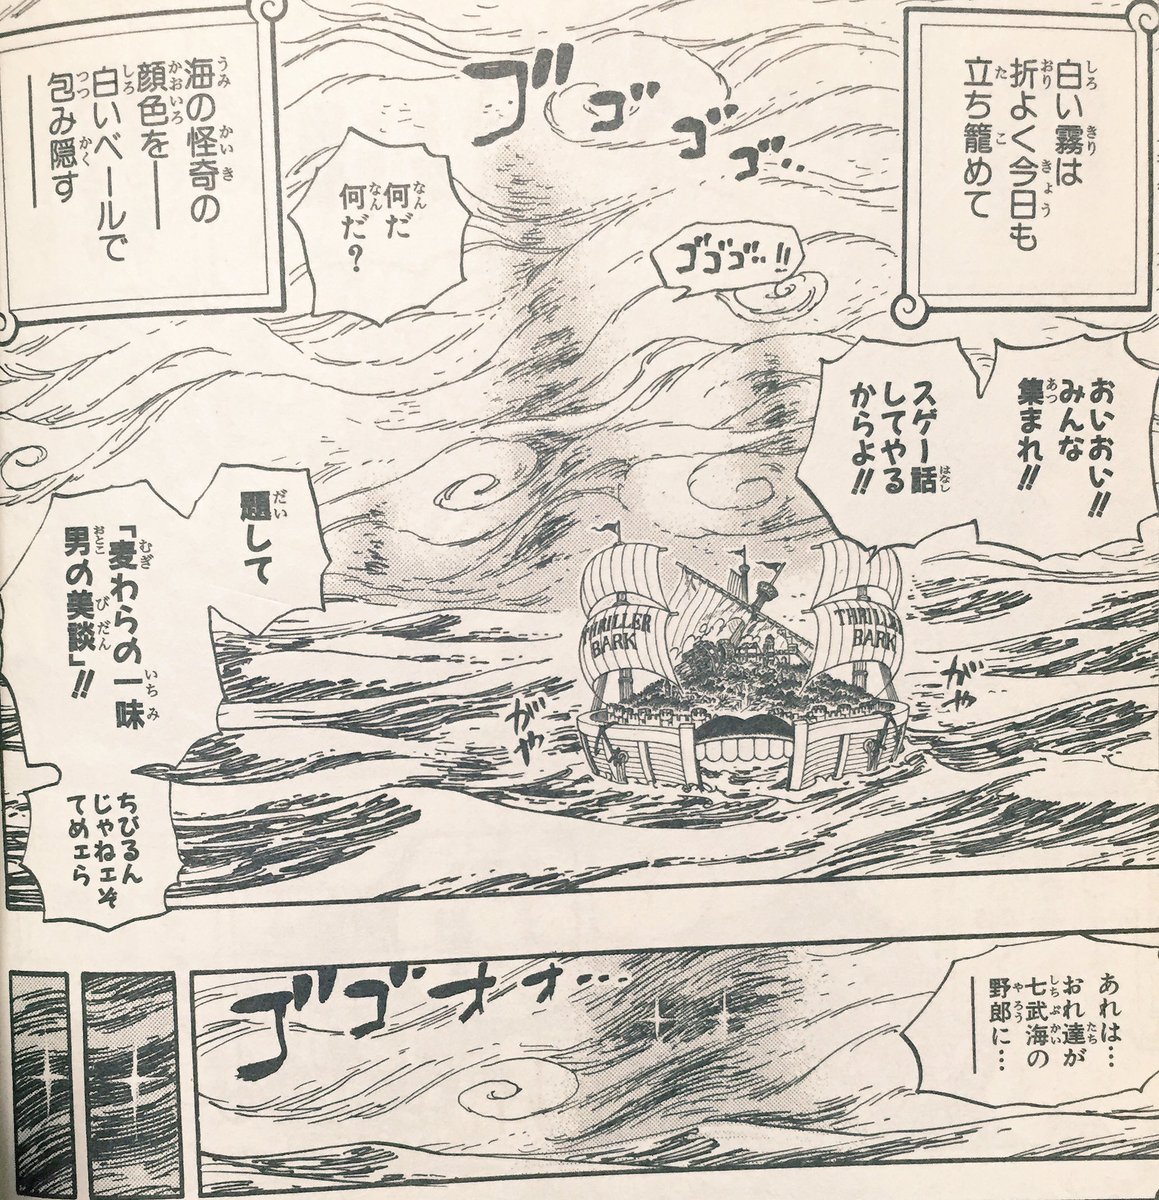 コバゆ と One Piece 50巻スリラーバーク編の最後に出てきた霧の中の謎の影 画像１枚目 これってゾウ 80巻 画像２枚目 なんかな T Co Dk9gdbcpbt